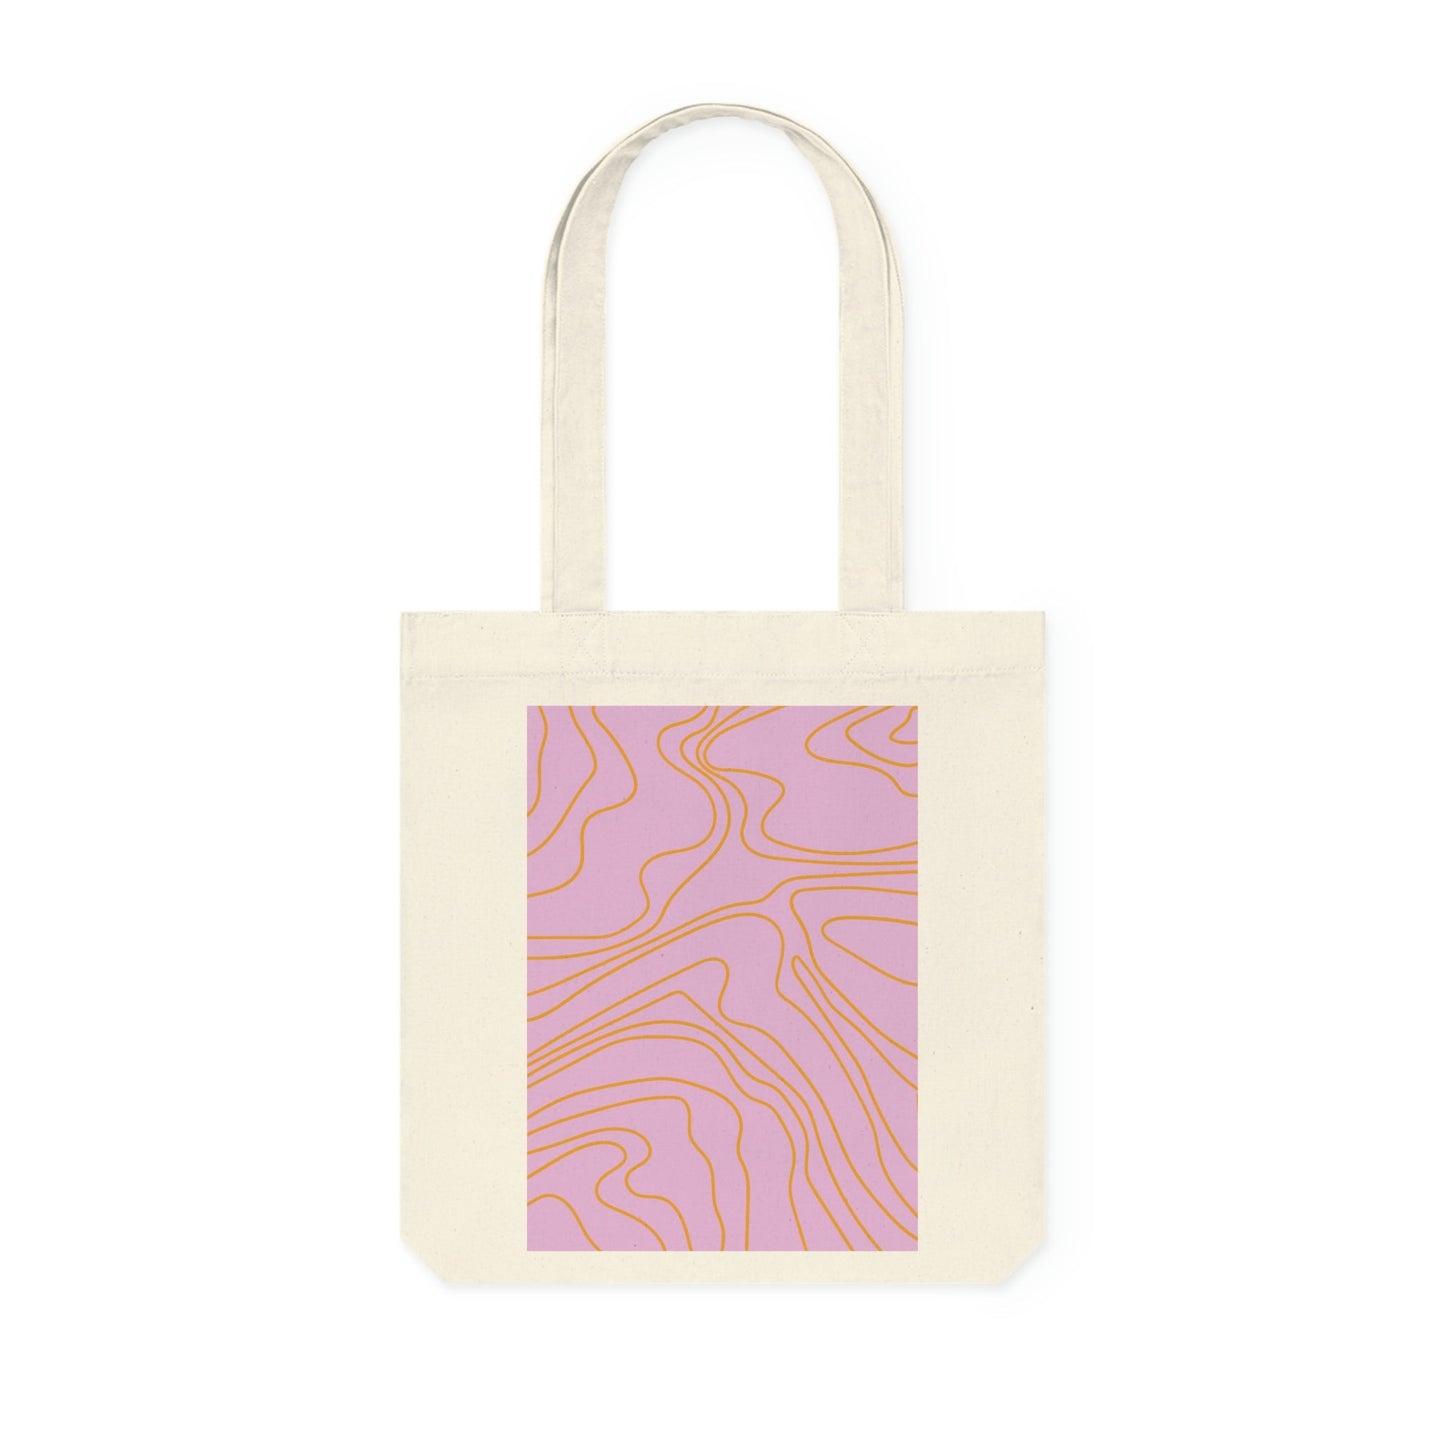 Little by Little - by Little Lady Funky tote bag 'Swirls' - pink&orange lines